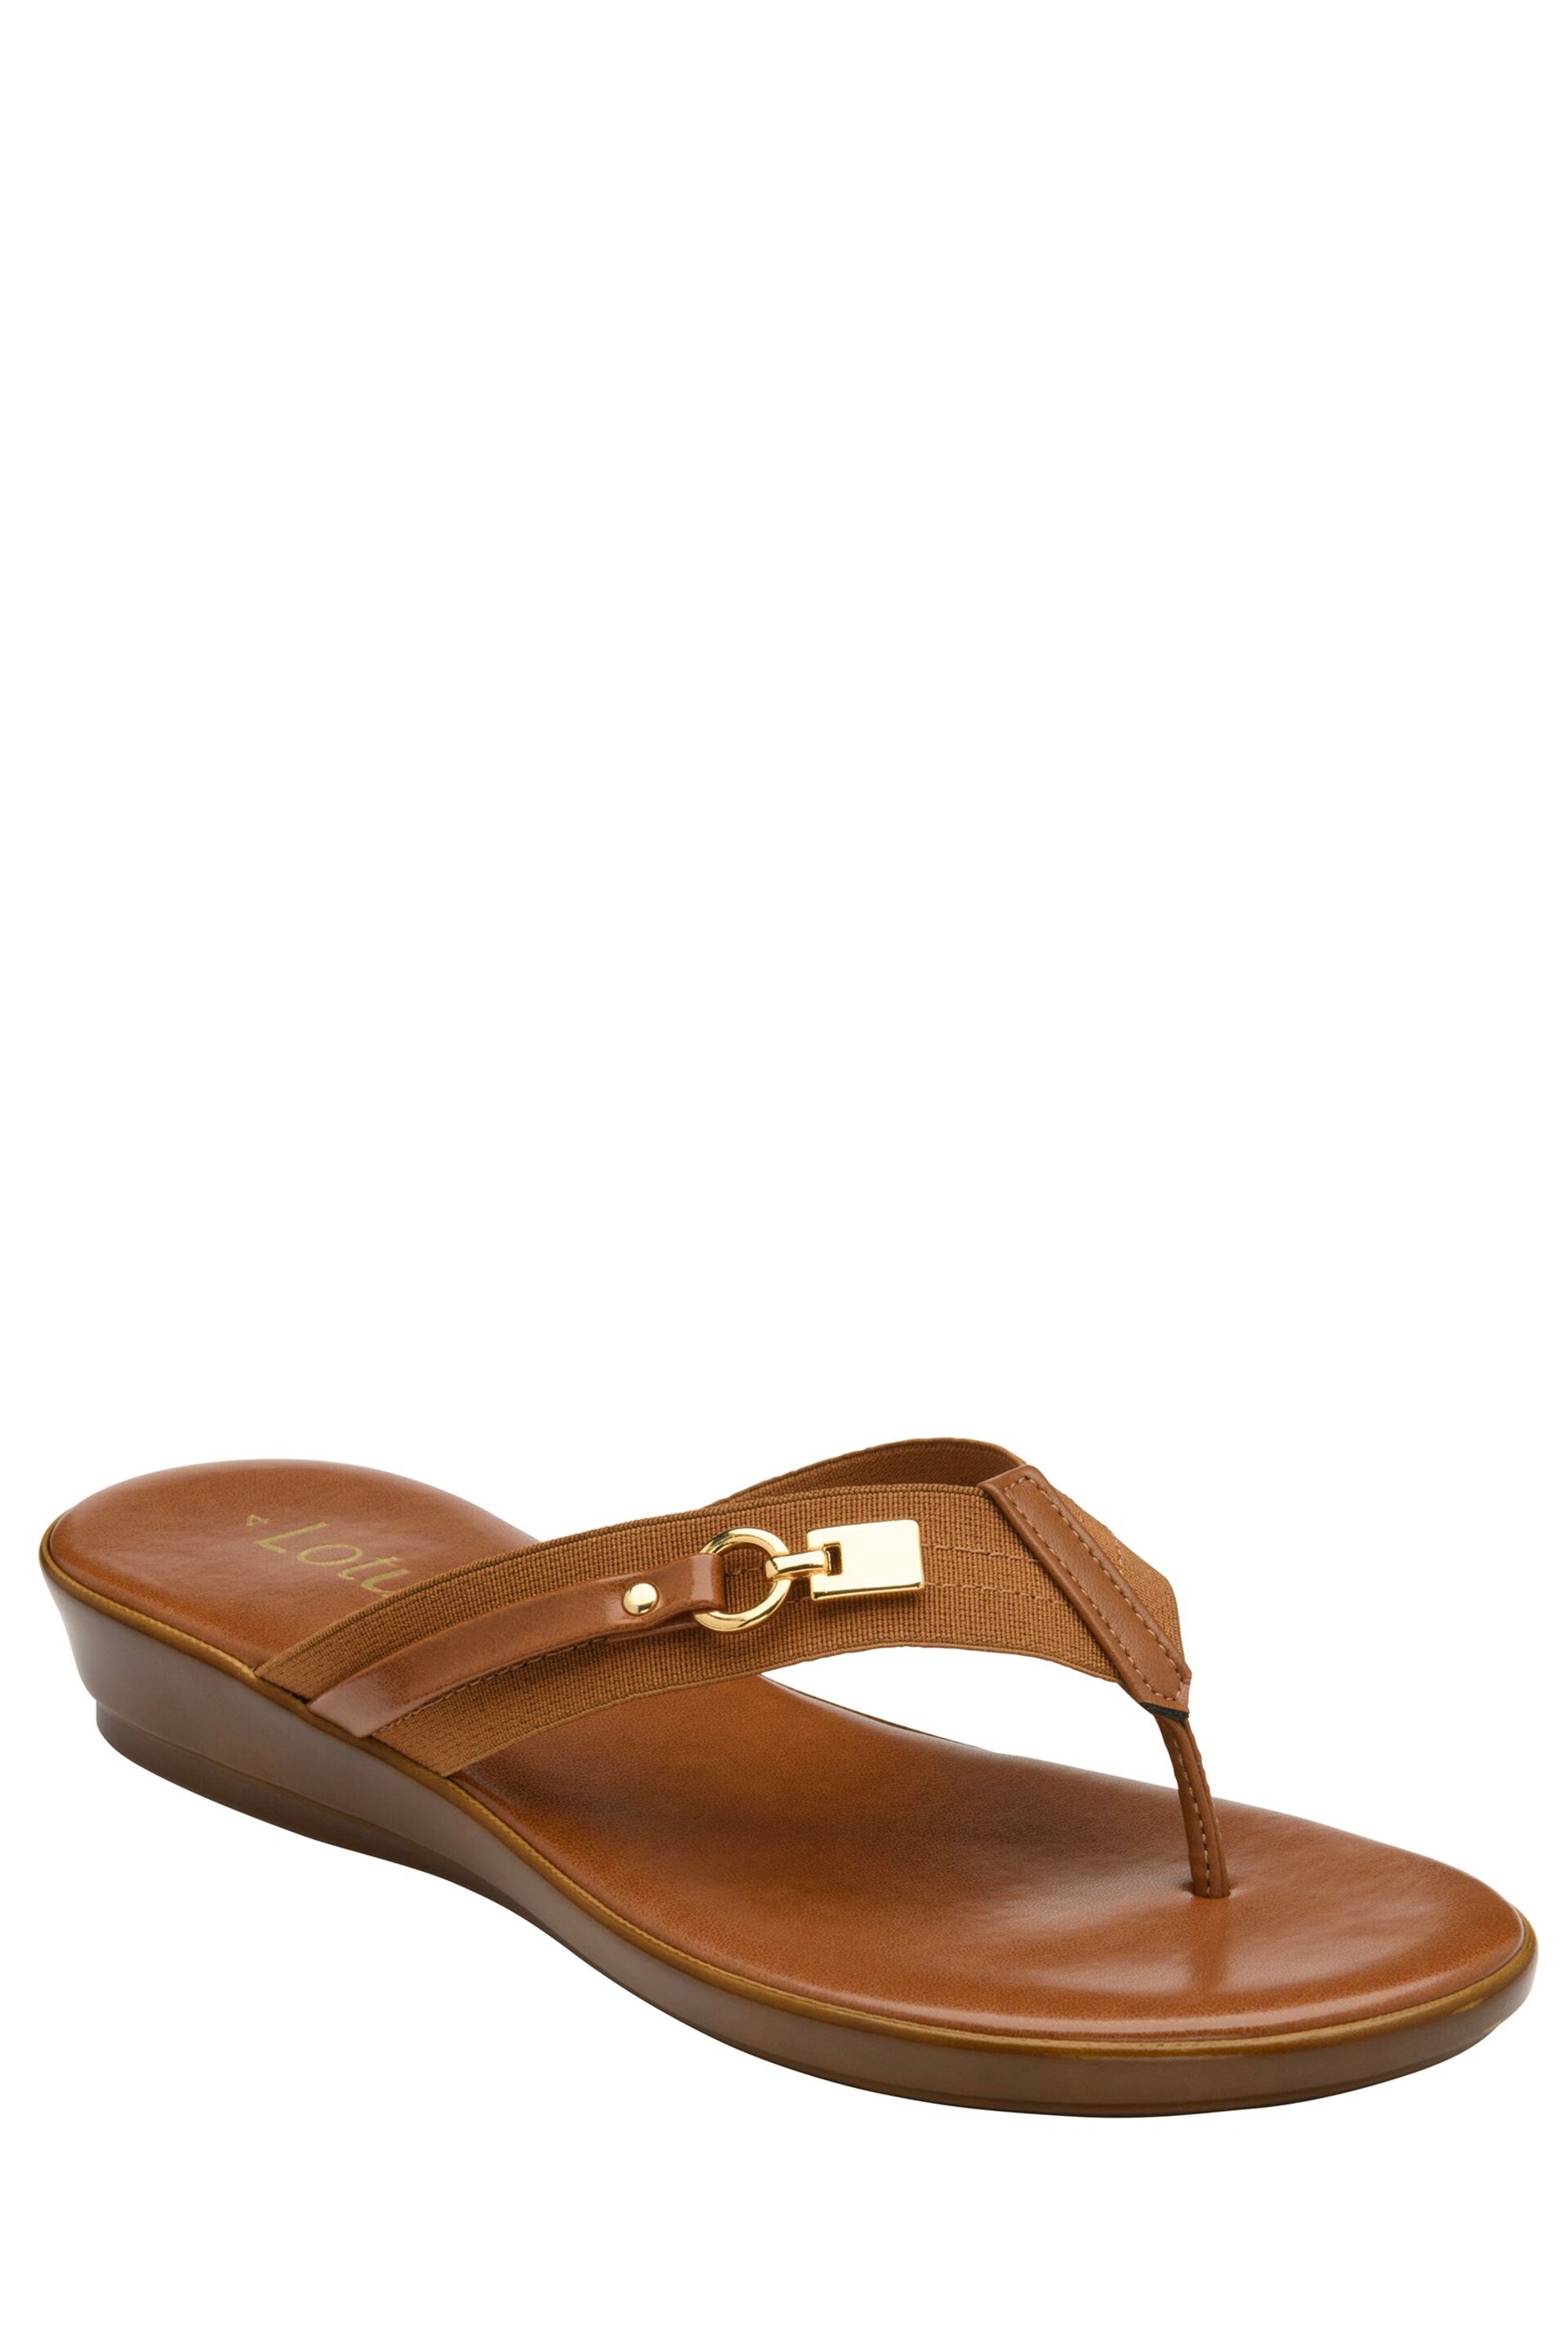 Lotus Brown Toe-Post Sandals - Image 1 of 4